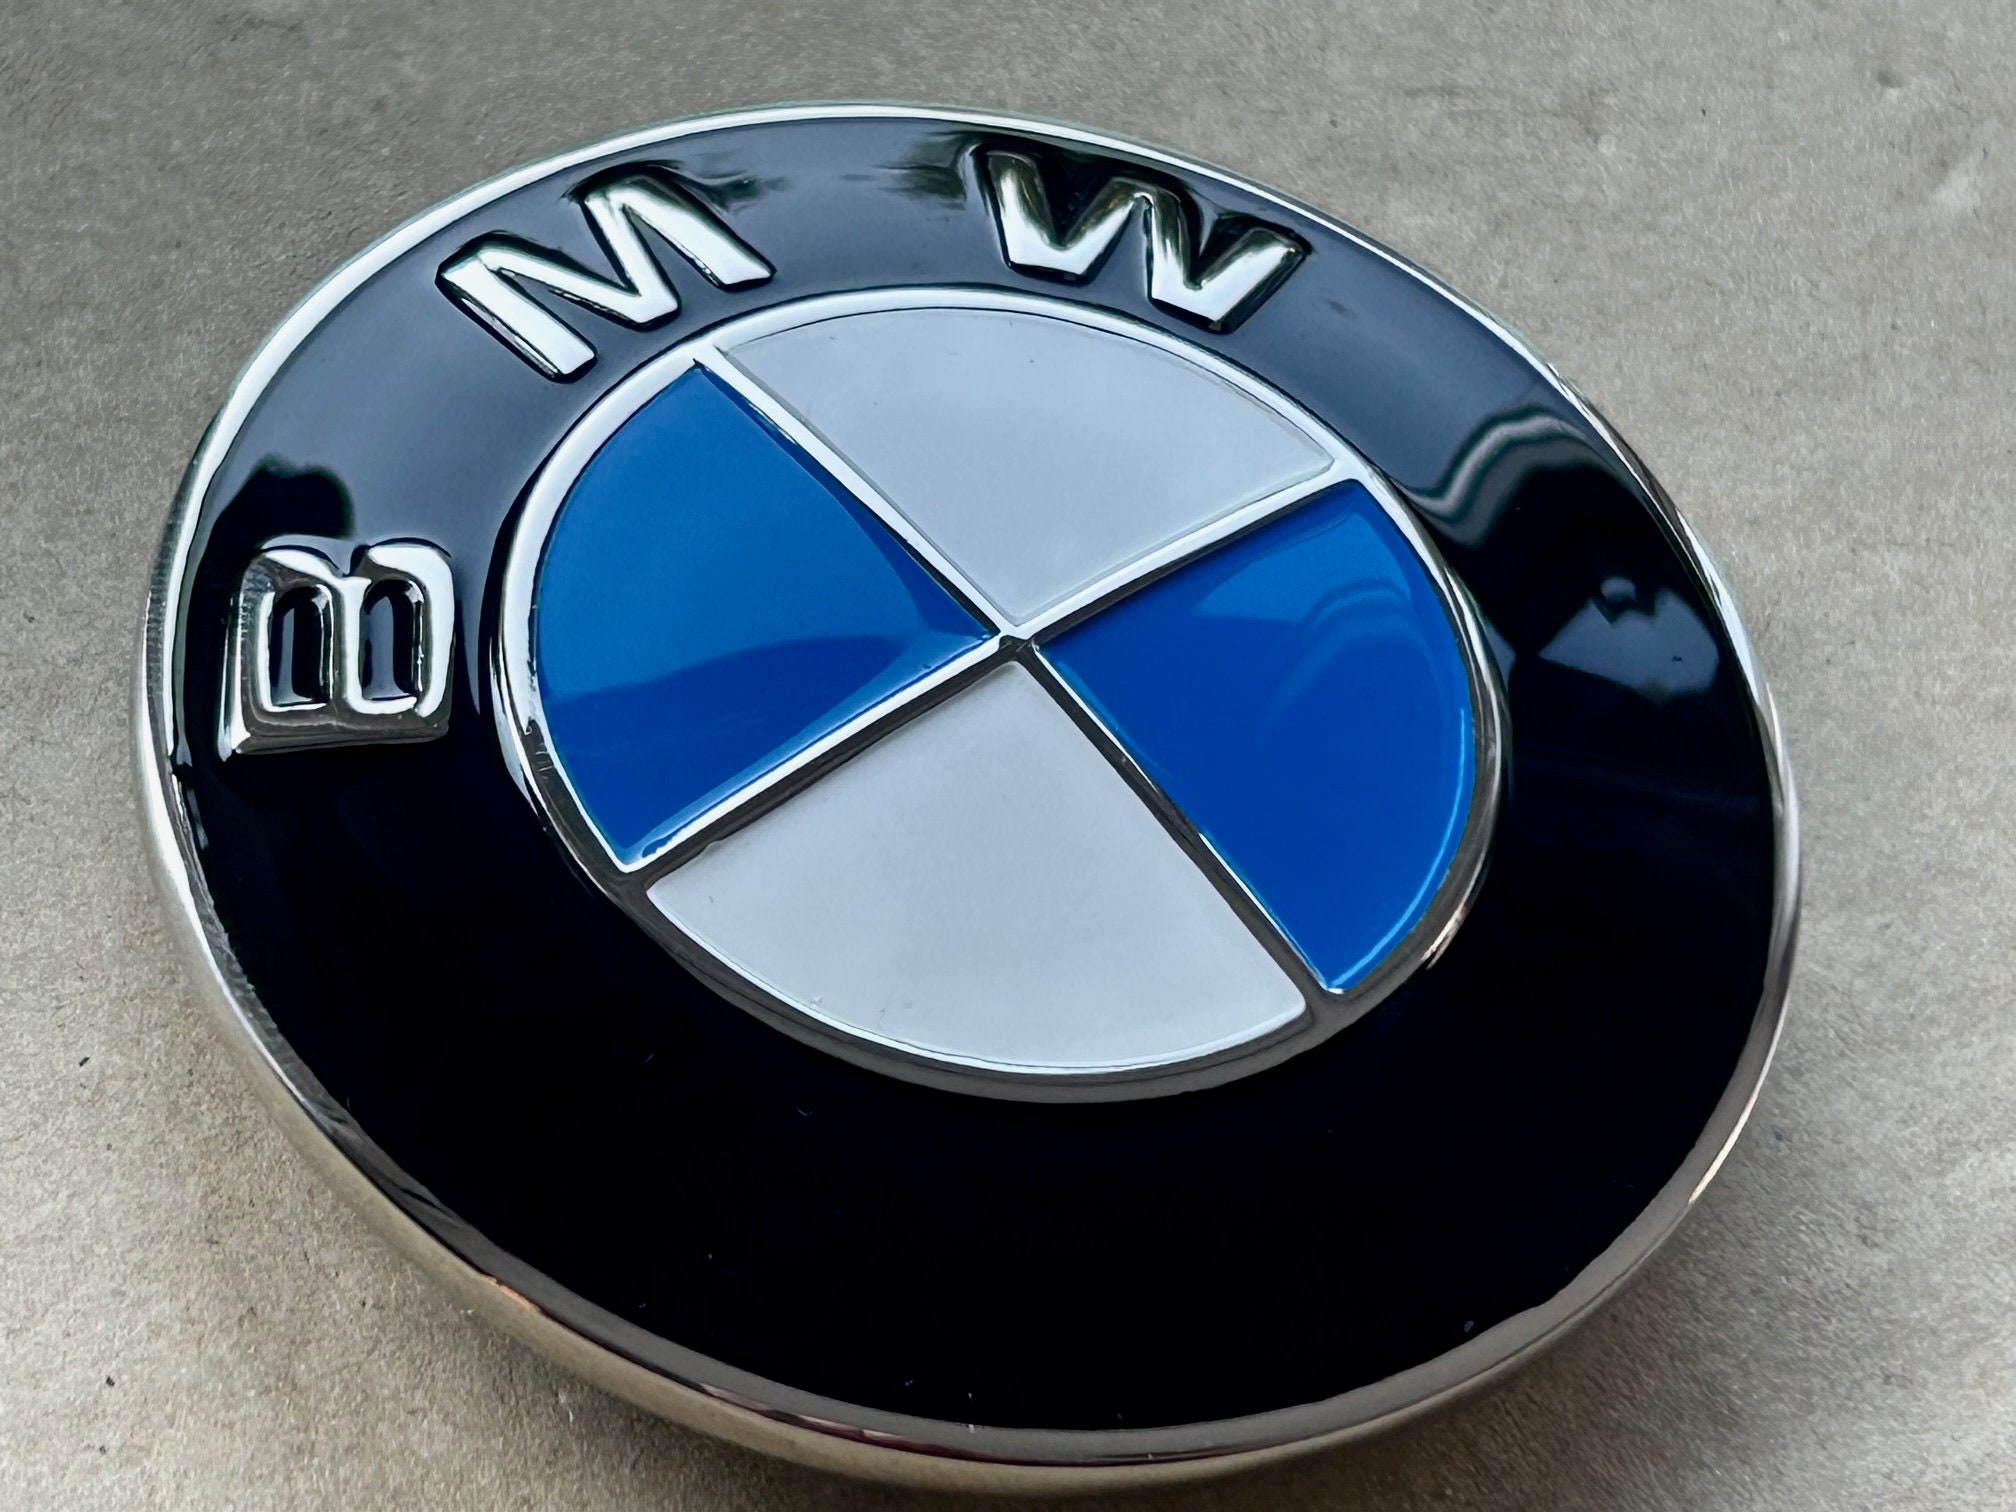 Emblema BMW 82mm Logo capó 50 Aniversario M Power second hand for